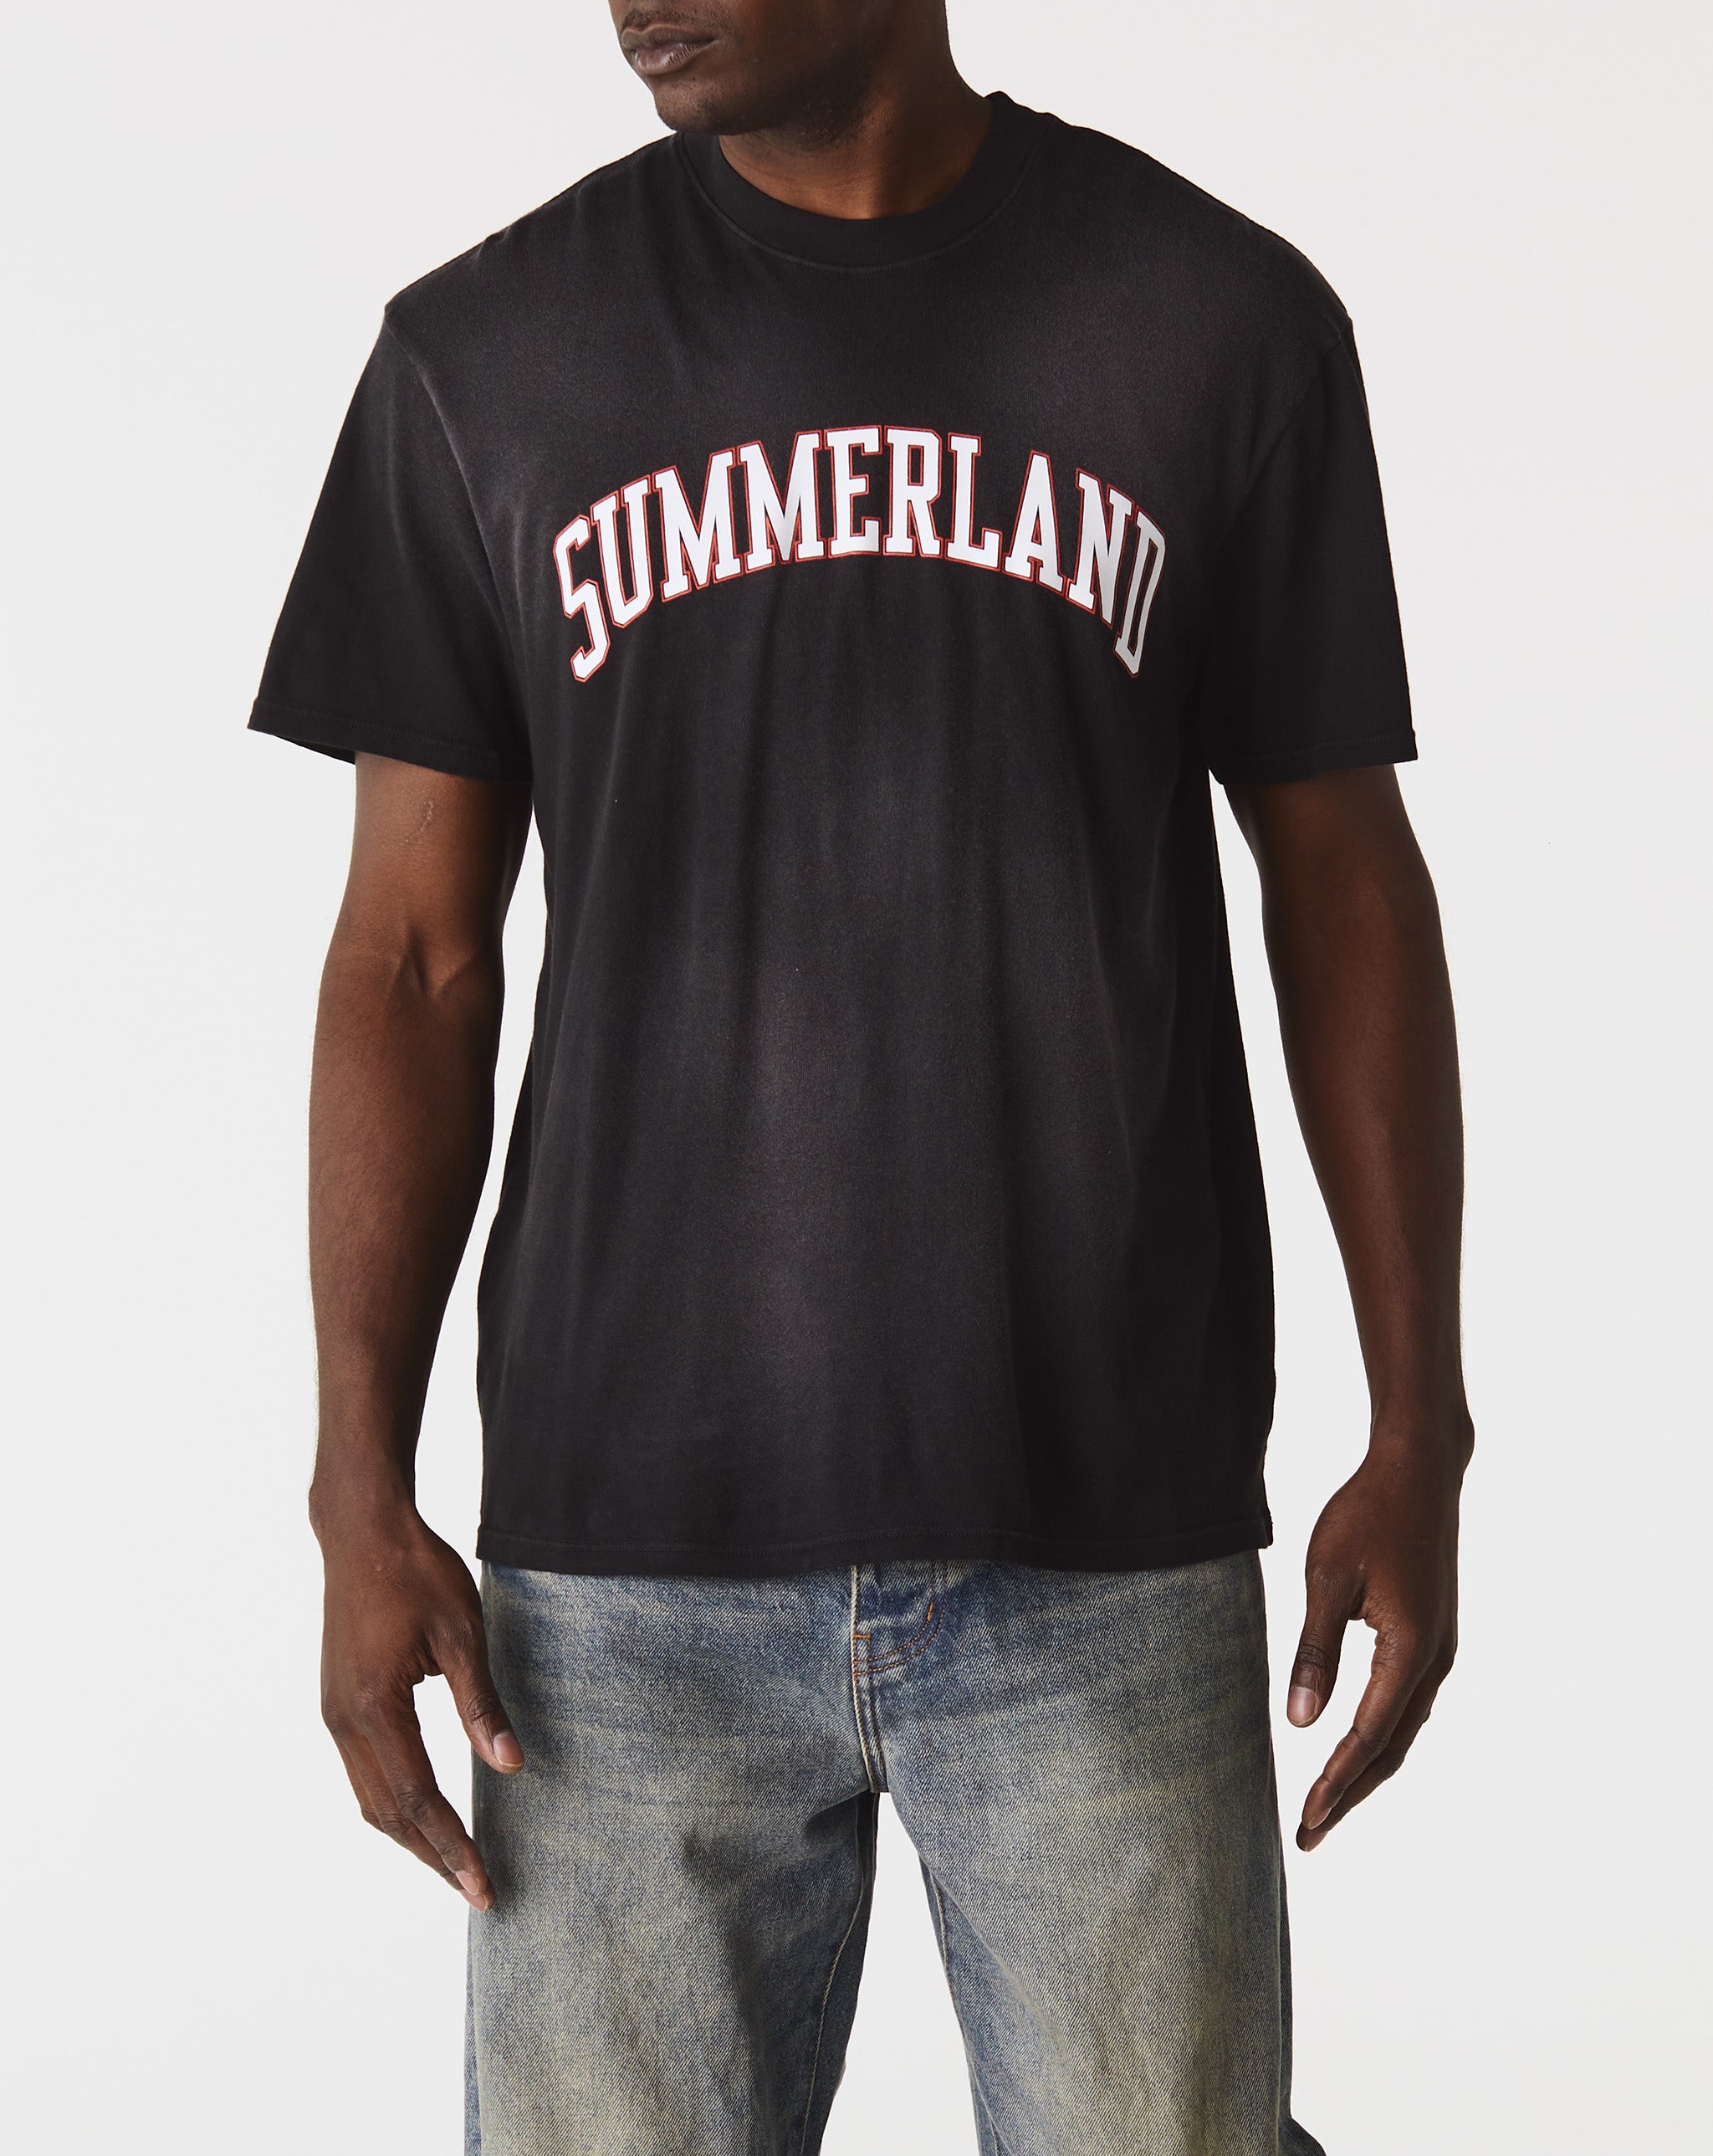 Nahmias Summerland Collegiate T-Shirt  - Cheap Urlfreeze Jordan outlet